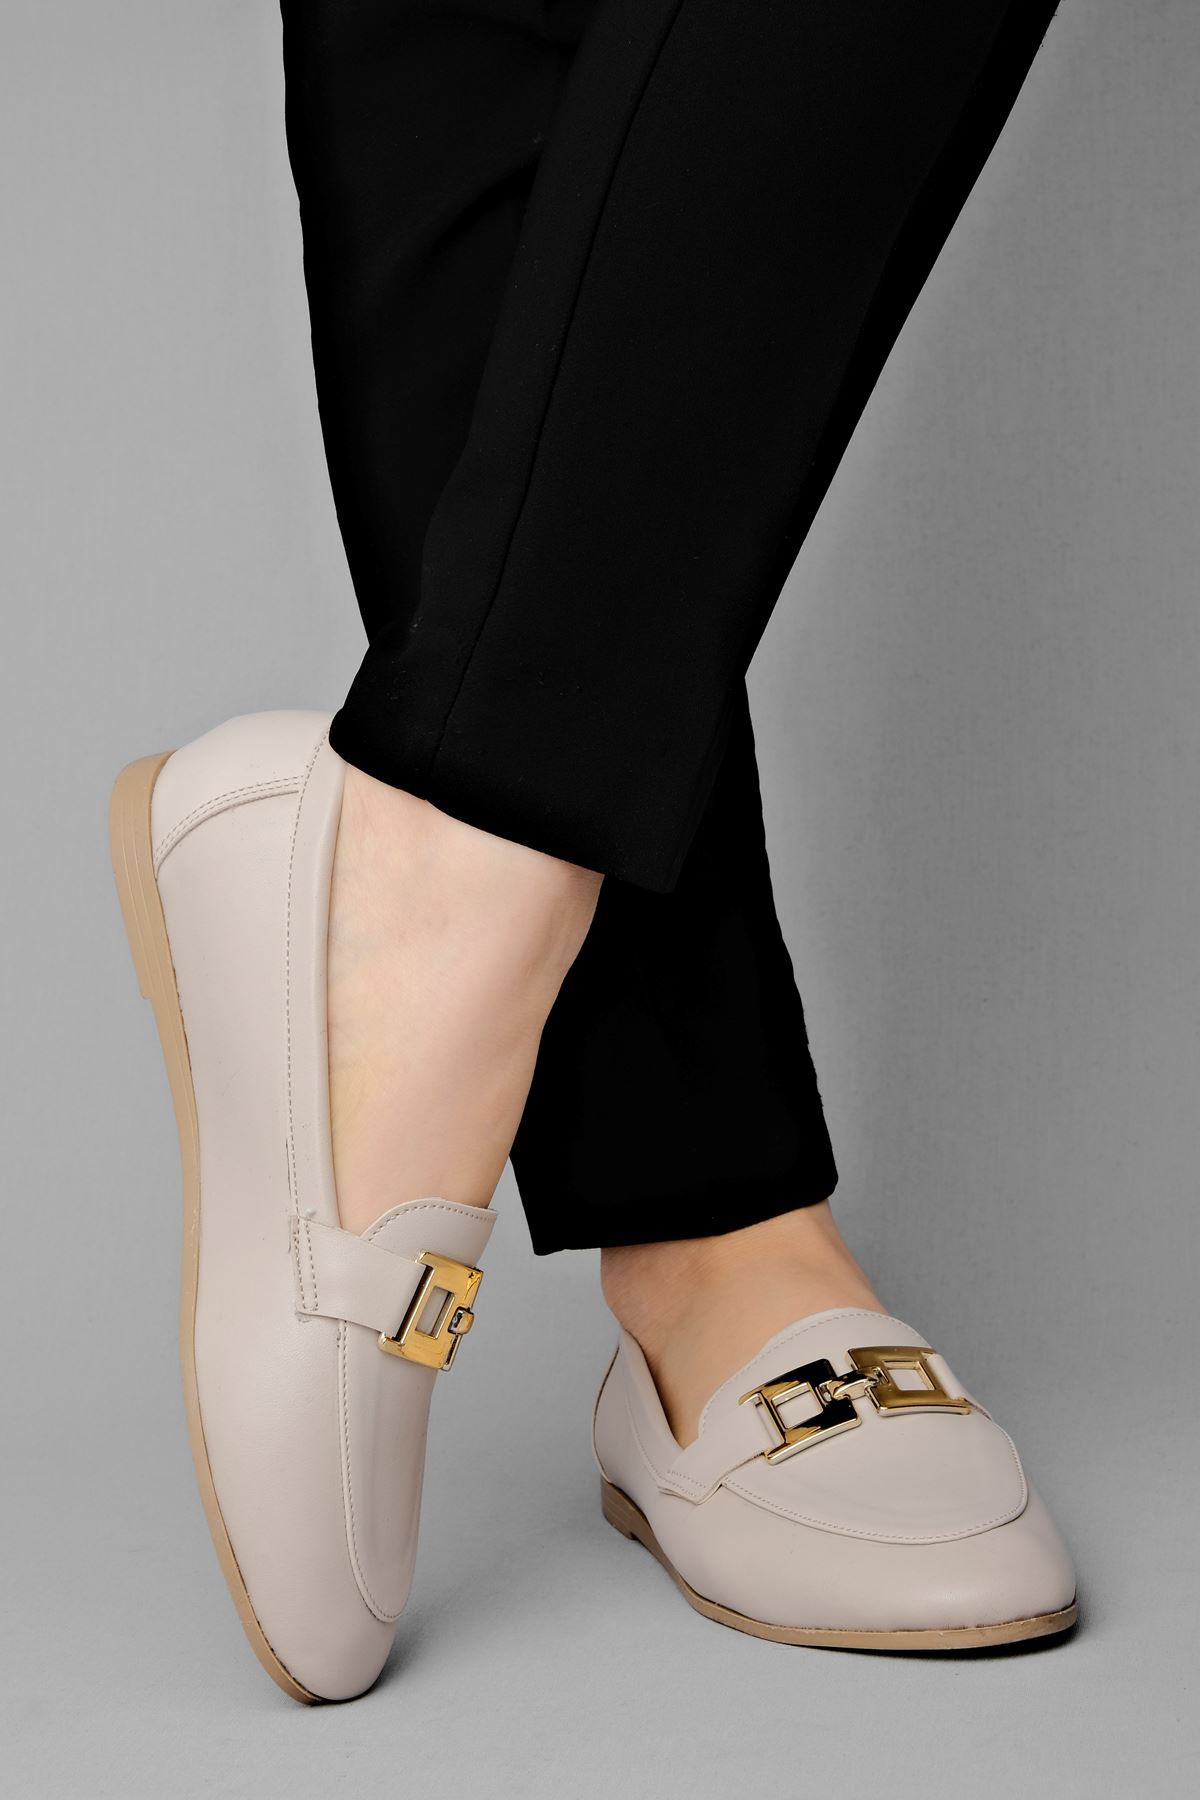 Benoda Kadın Babet Gold Tokalı-Krem - Kadın Ayakkabının Tek Adresi -  Lalshoes